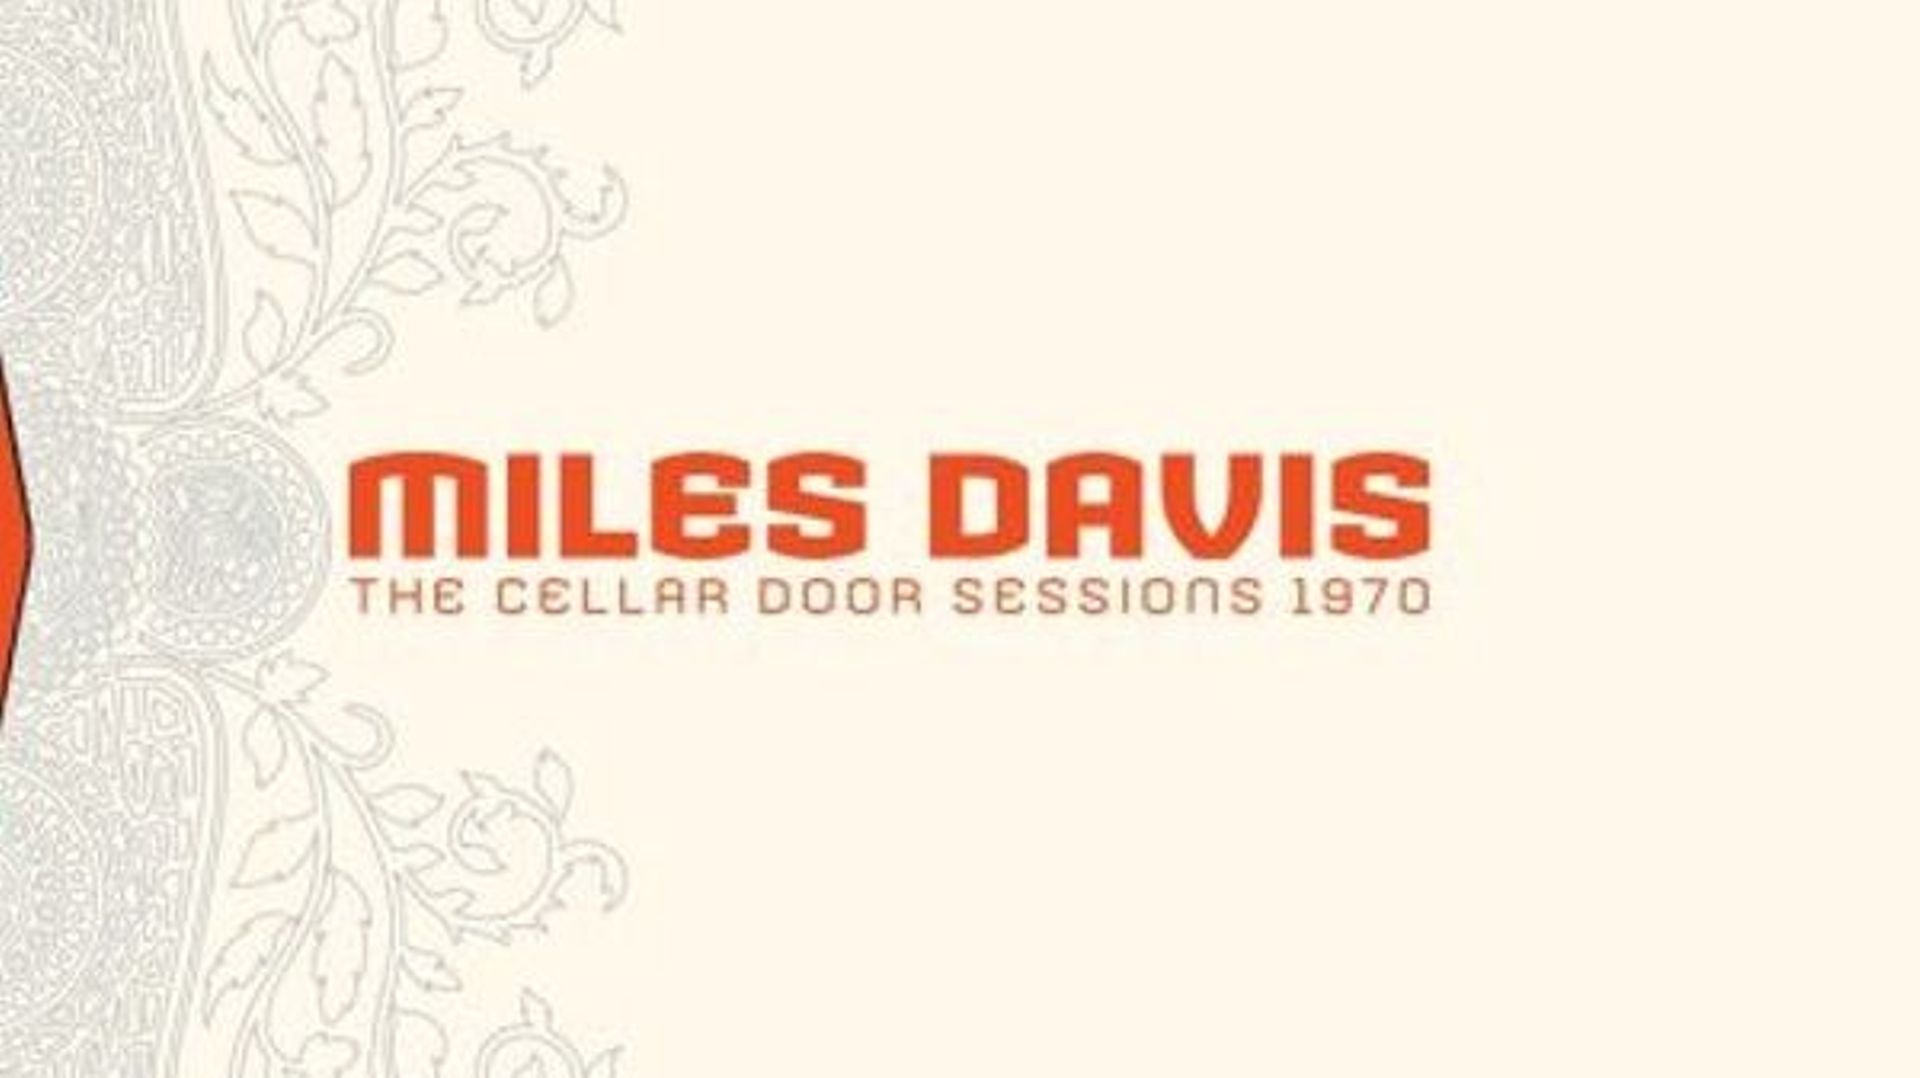 Il y a 50 ans s’enregistrait "The Cellar Door Sessions 1970" de Miles Davis